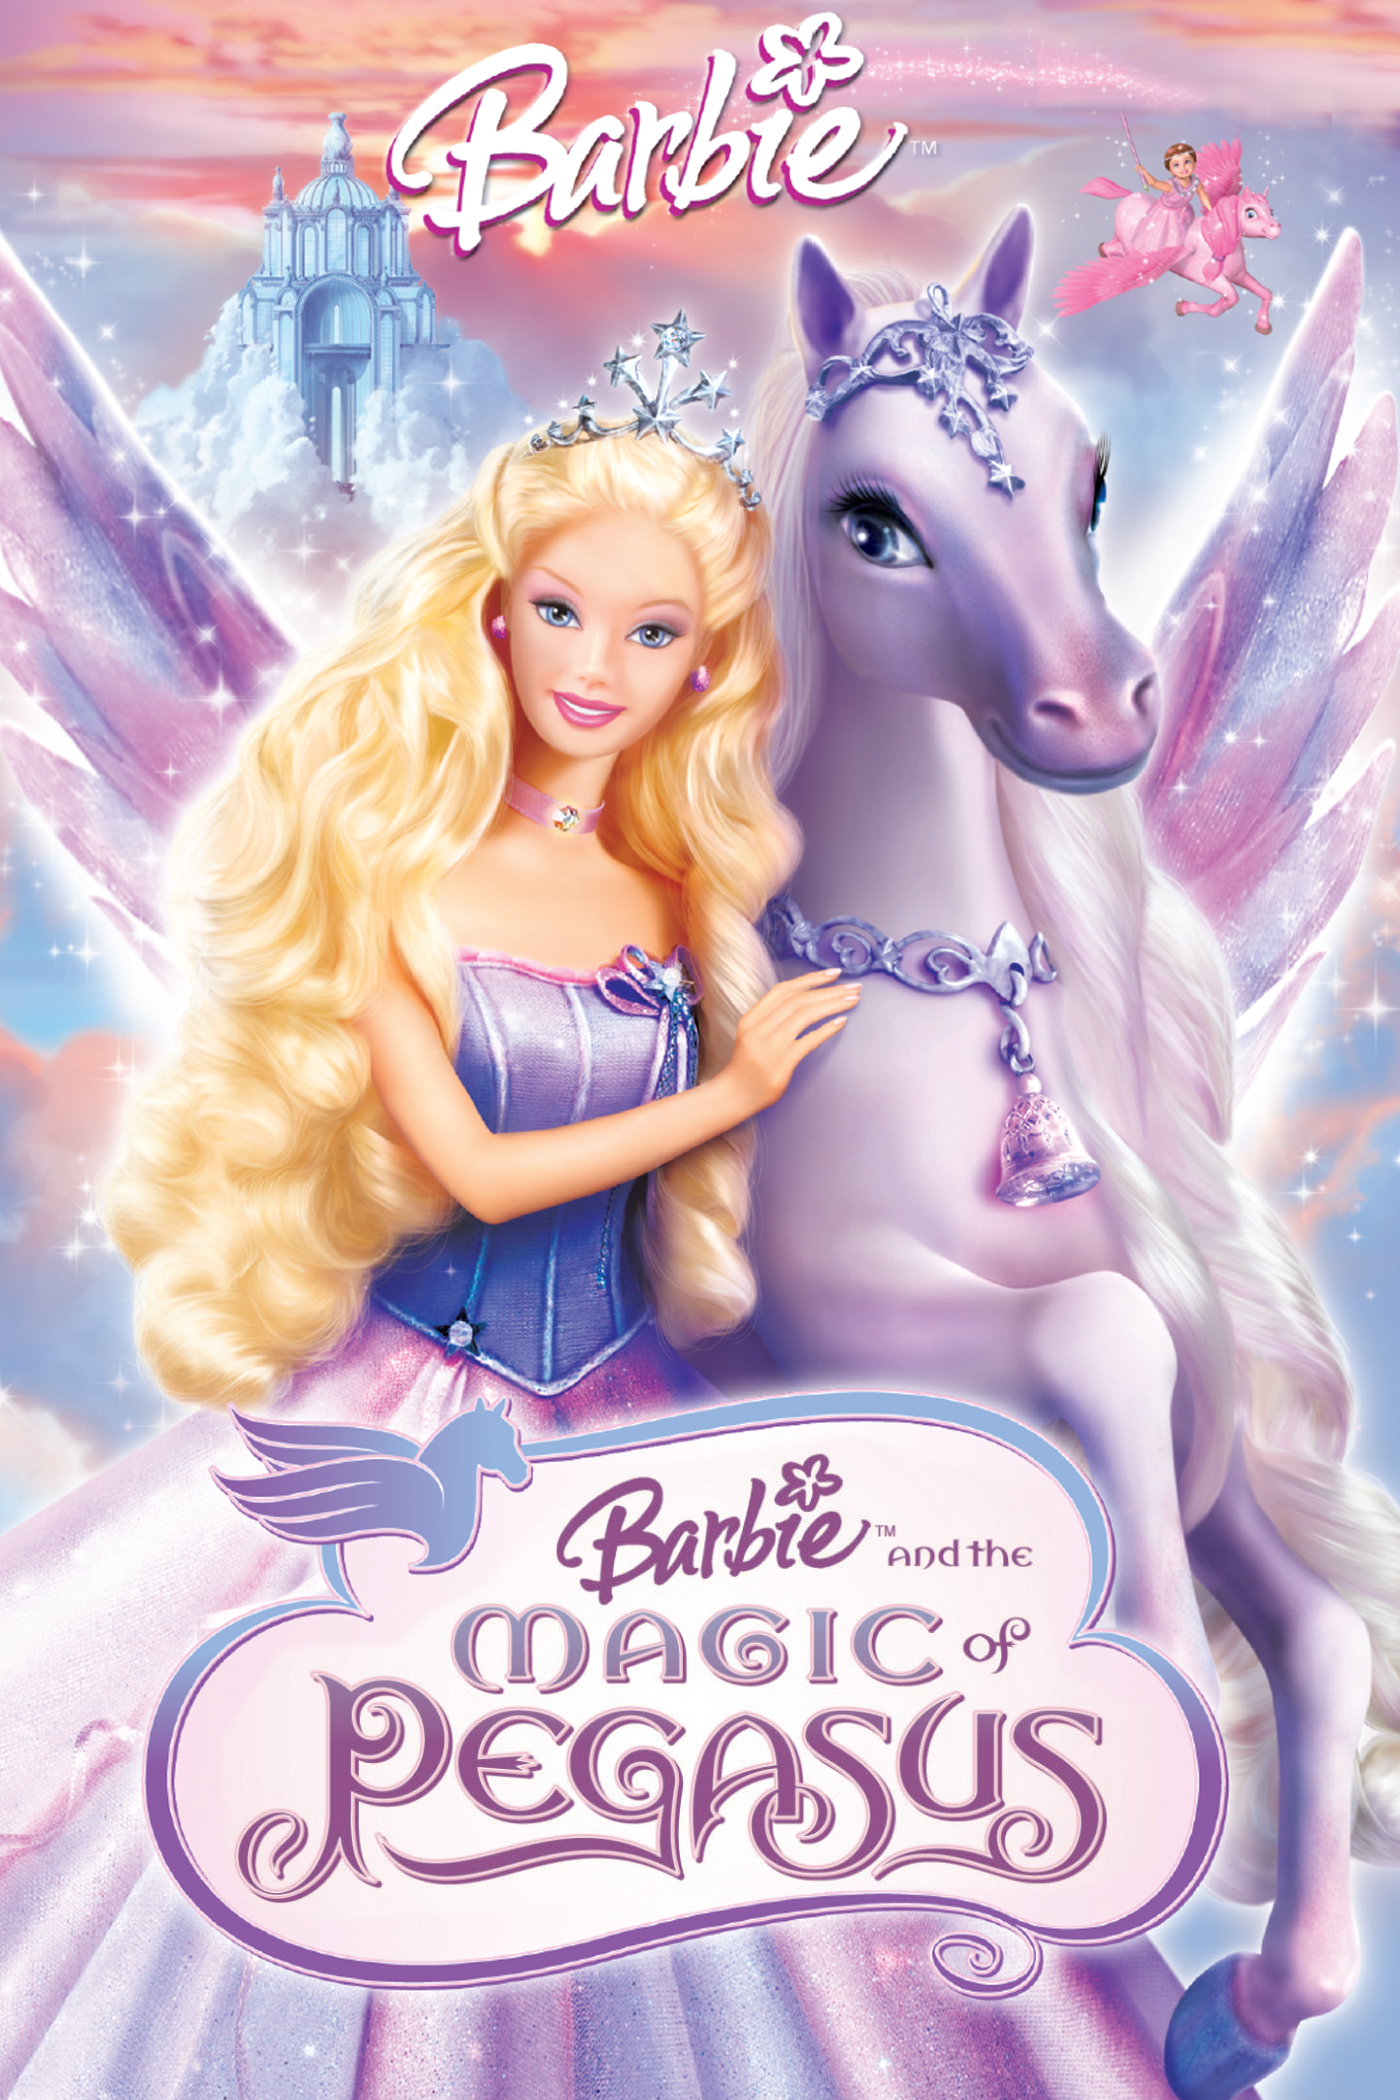 barbie magic of pegasus 123movies